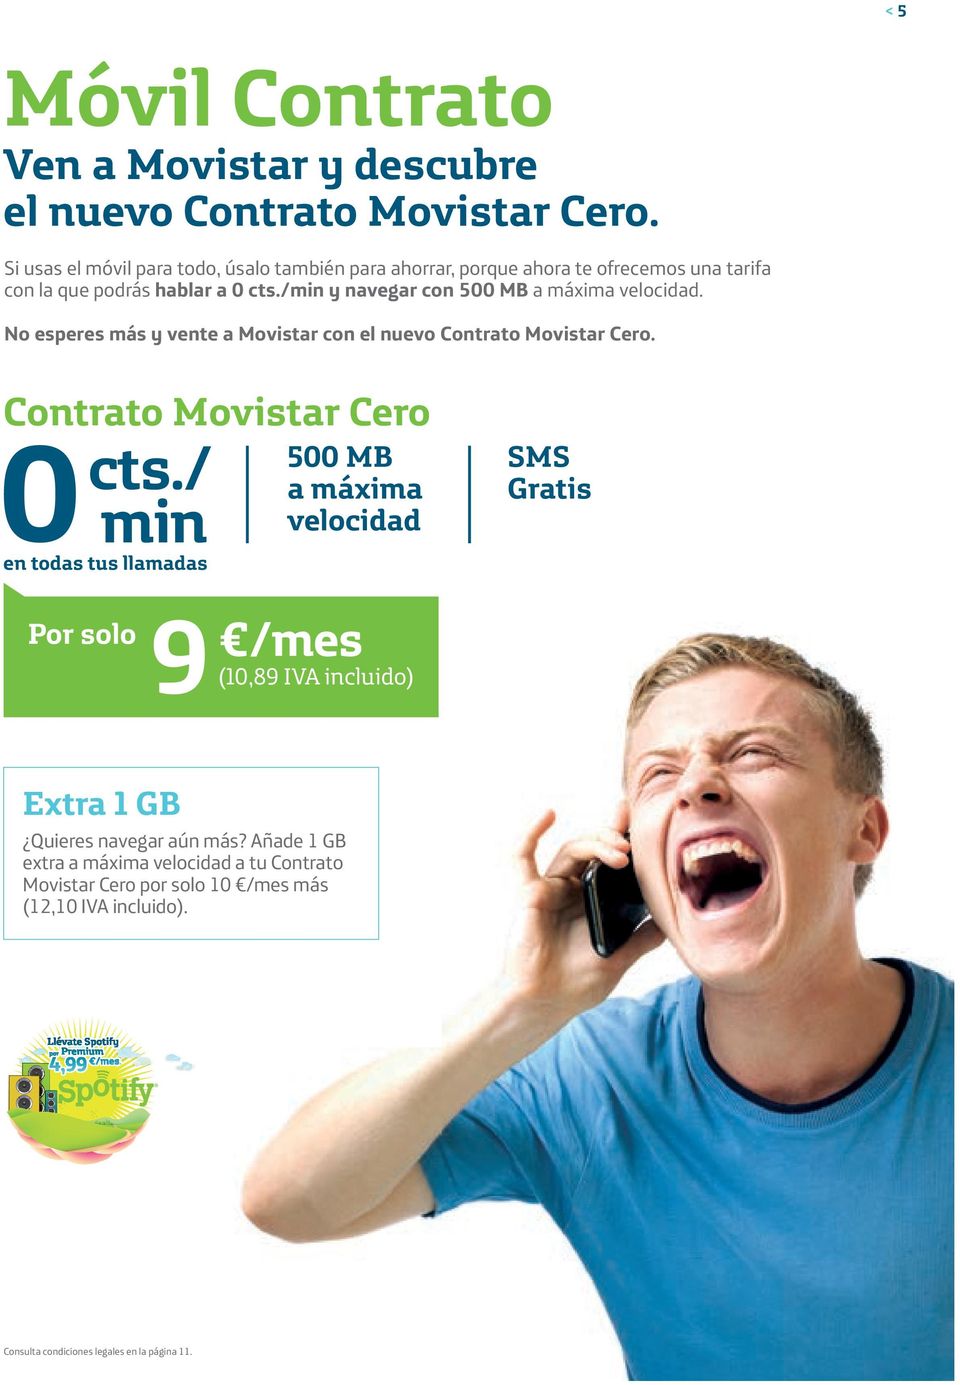 /min y navegar con 500 MB. No esperes más y vente a Movistar con el nuevo Contrato Movistar Cero. Contrato Movistar Cero 0 cts.